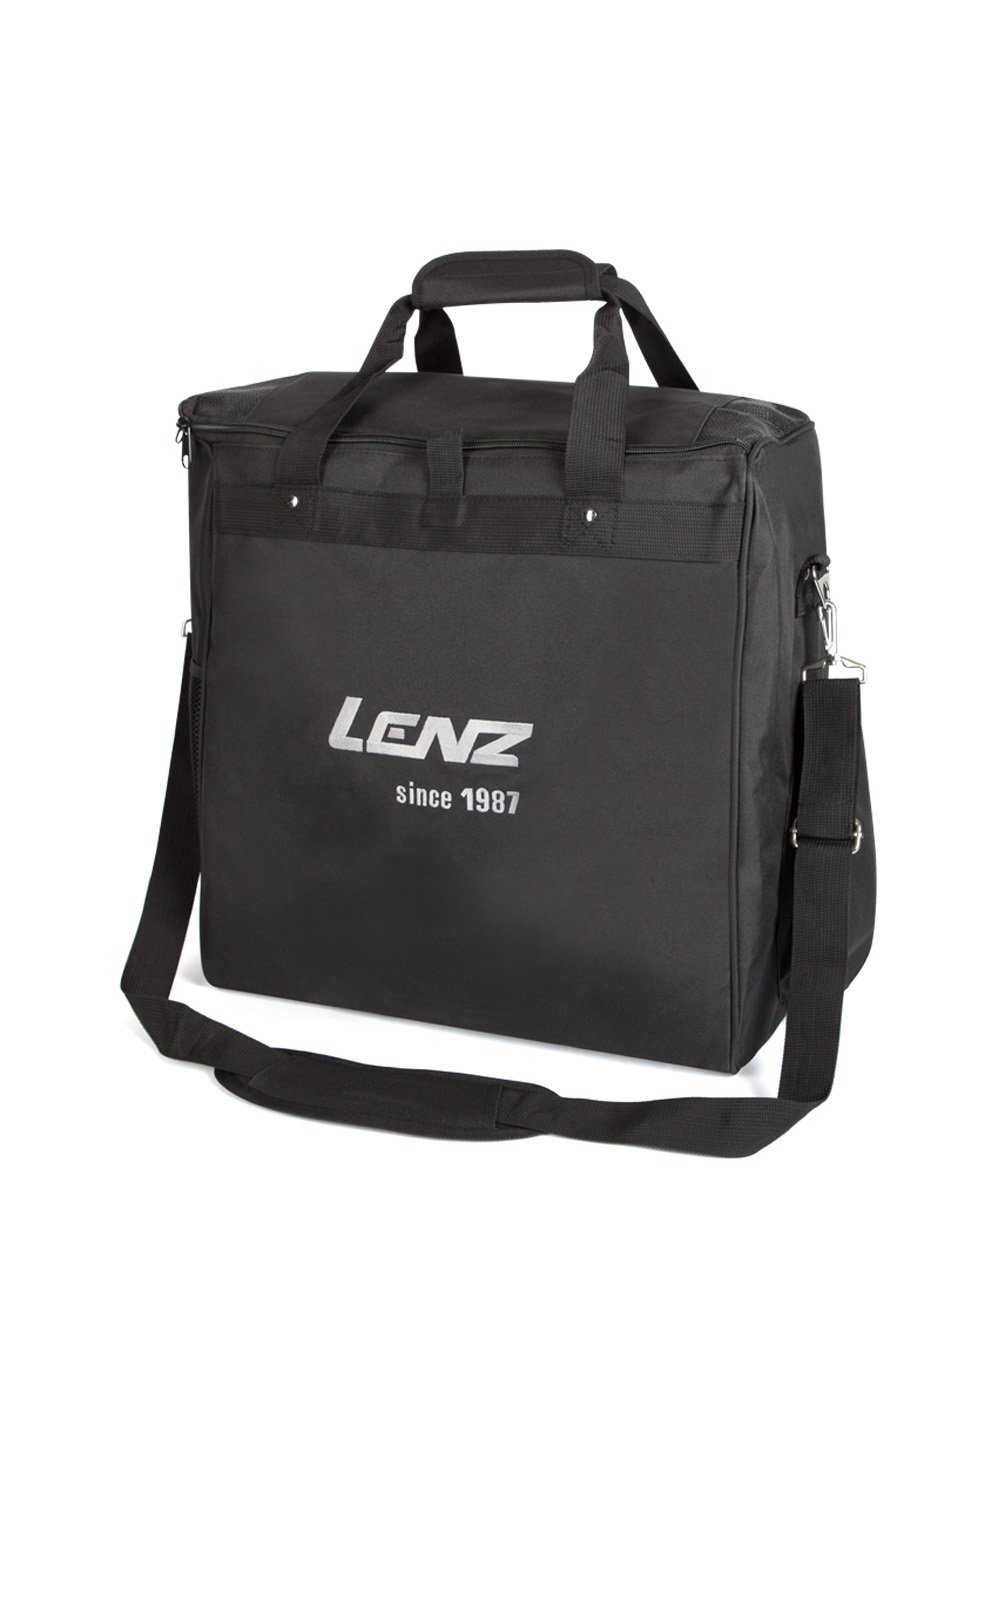 Vyhrievaná taška LENZ Heat Bag 1.0